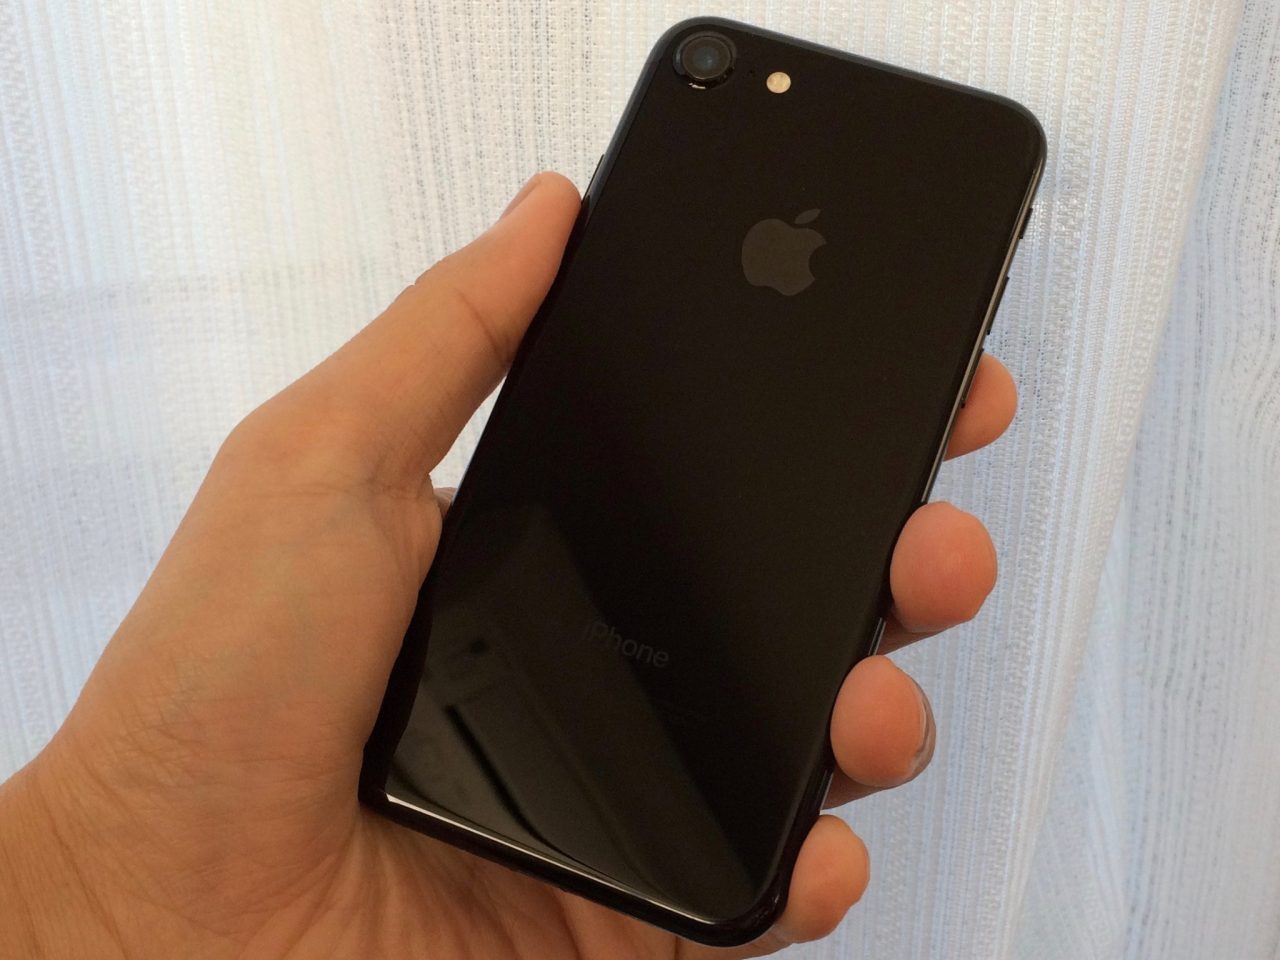 iPhone 7のジェットブラックの手触り感が素晴らしい。iPhone 5c を思い起こさせる